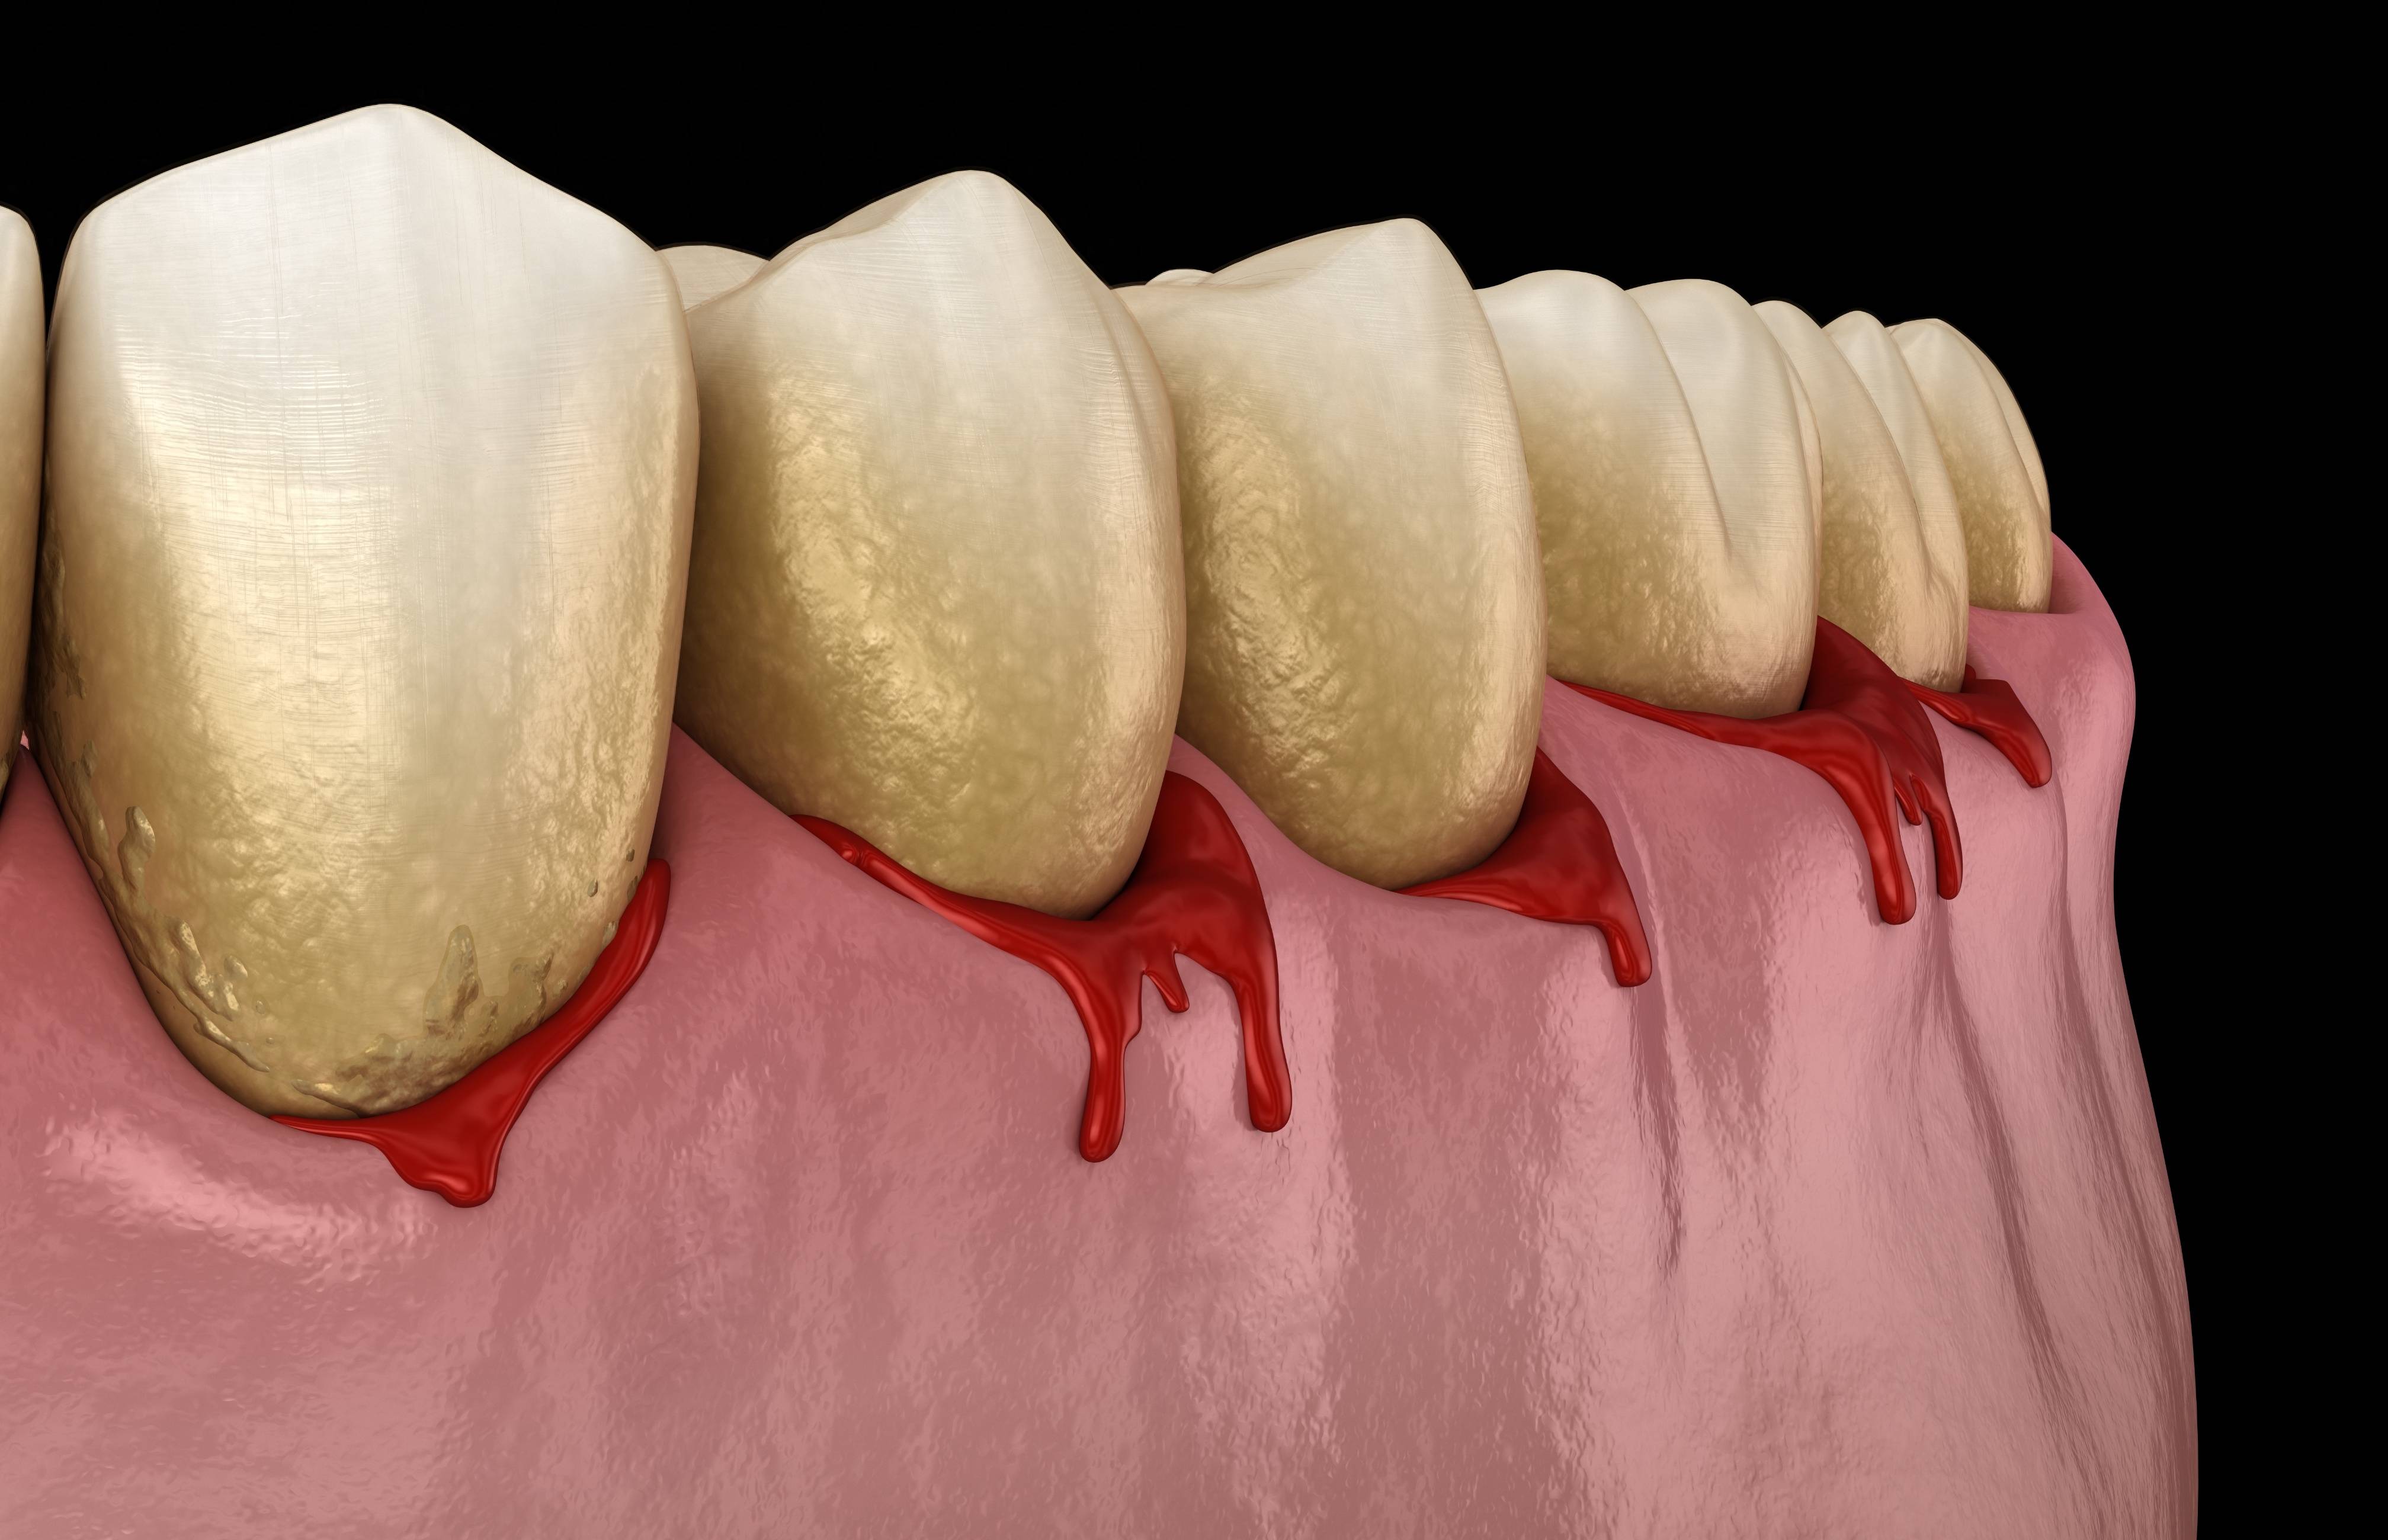 壹邦健康知识:牙龈癌的发病原因是什么?